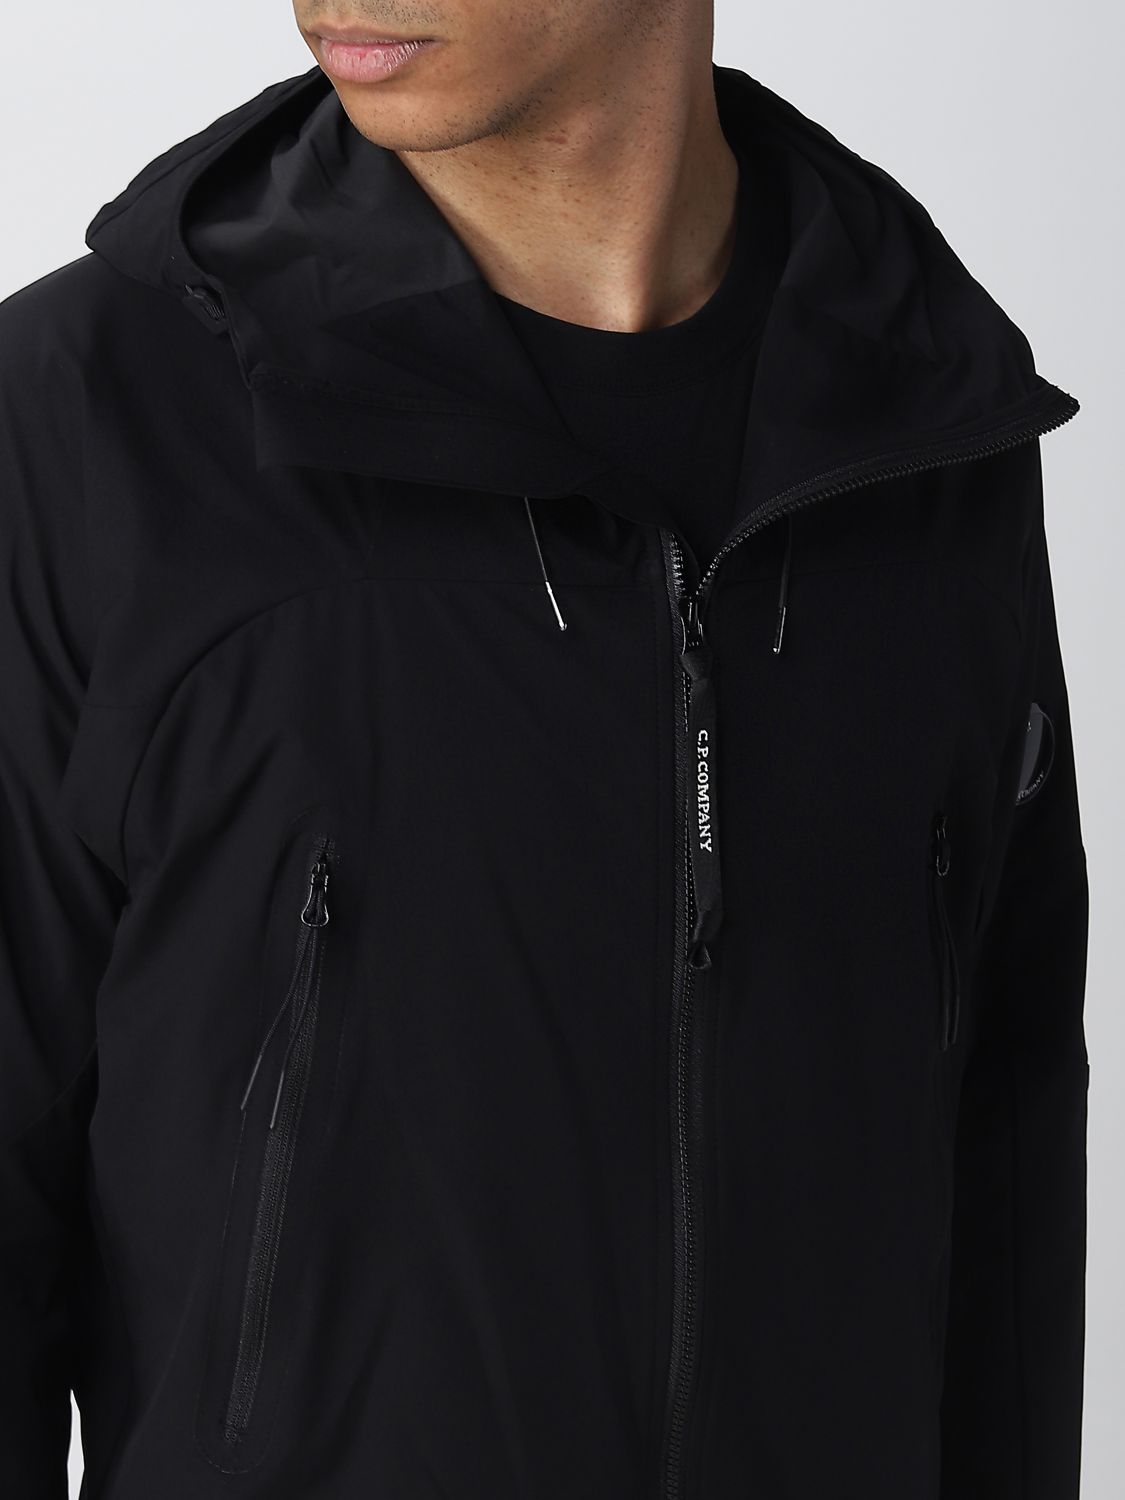 C.P. COMPANY: jacket for men - Black | C.p. Company jacket ...